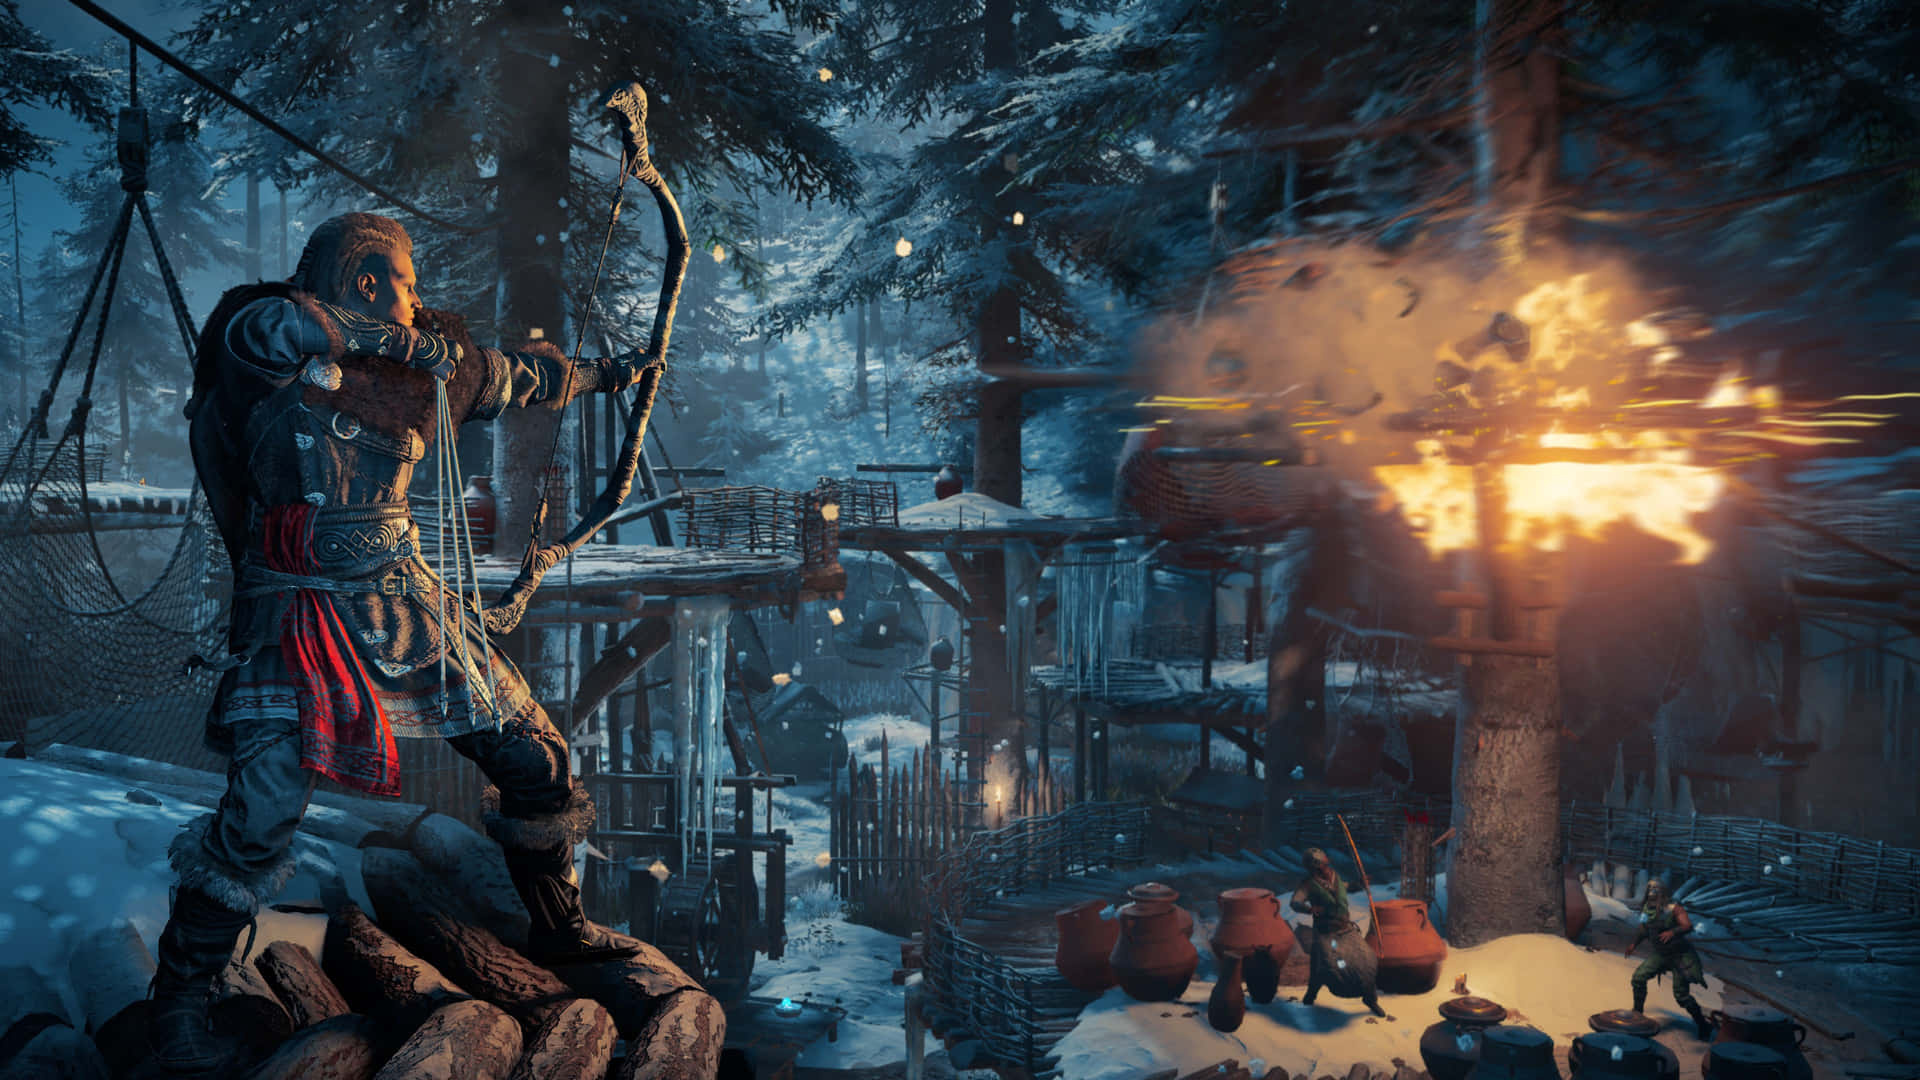 4khintergrundbild Von Assassin's Creed Valhalla: Brennender Baum